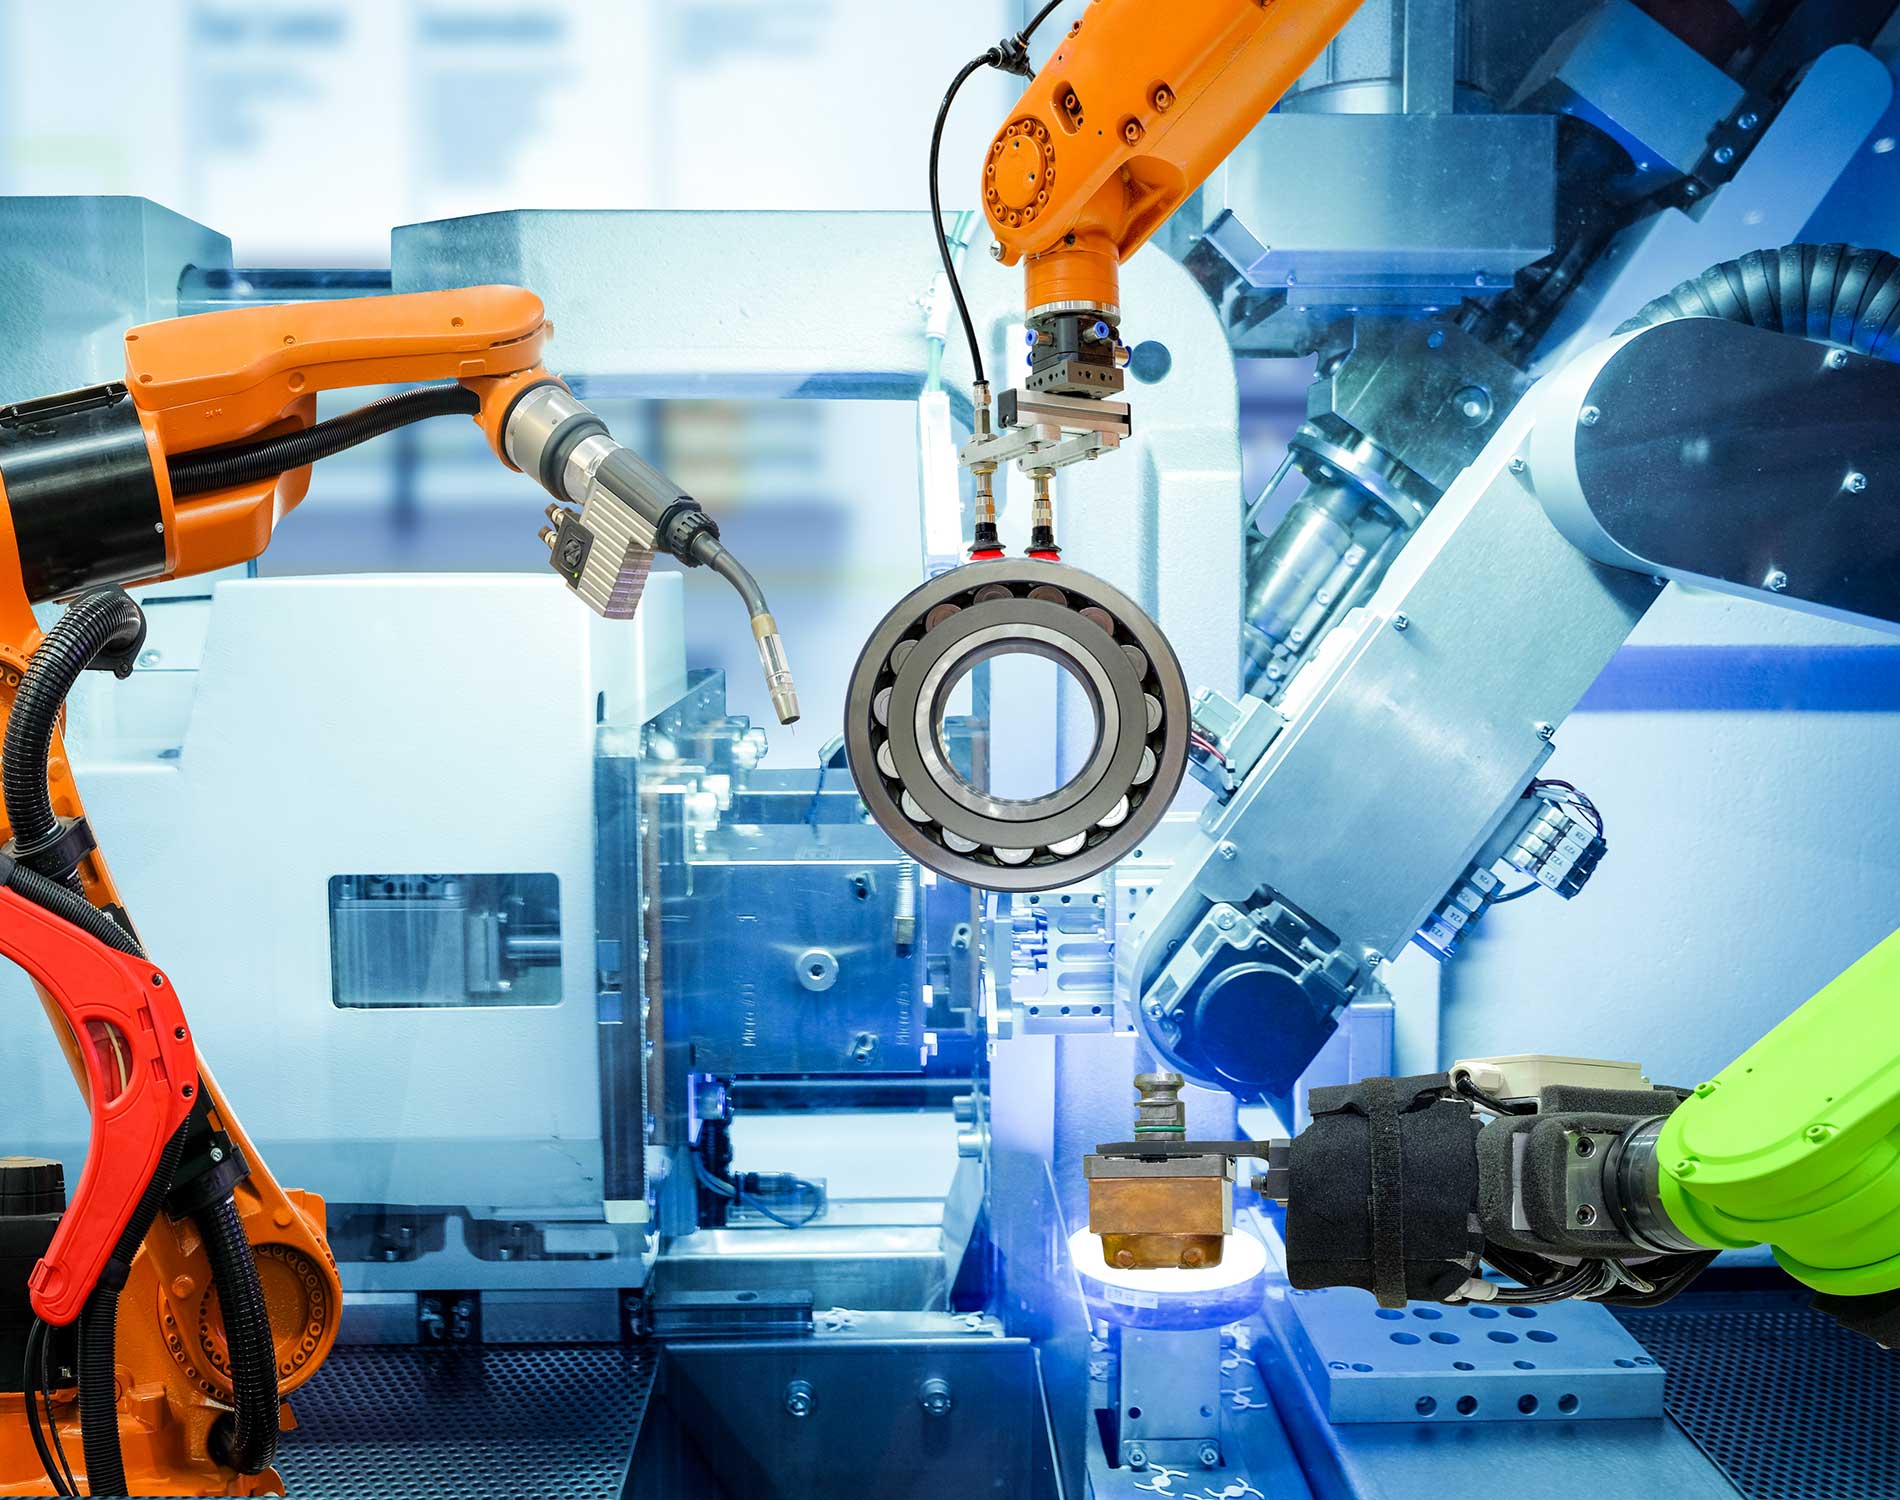 Industrial robotic welding